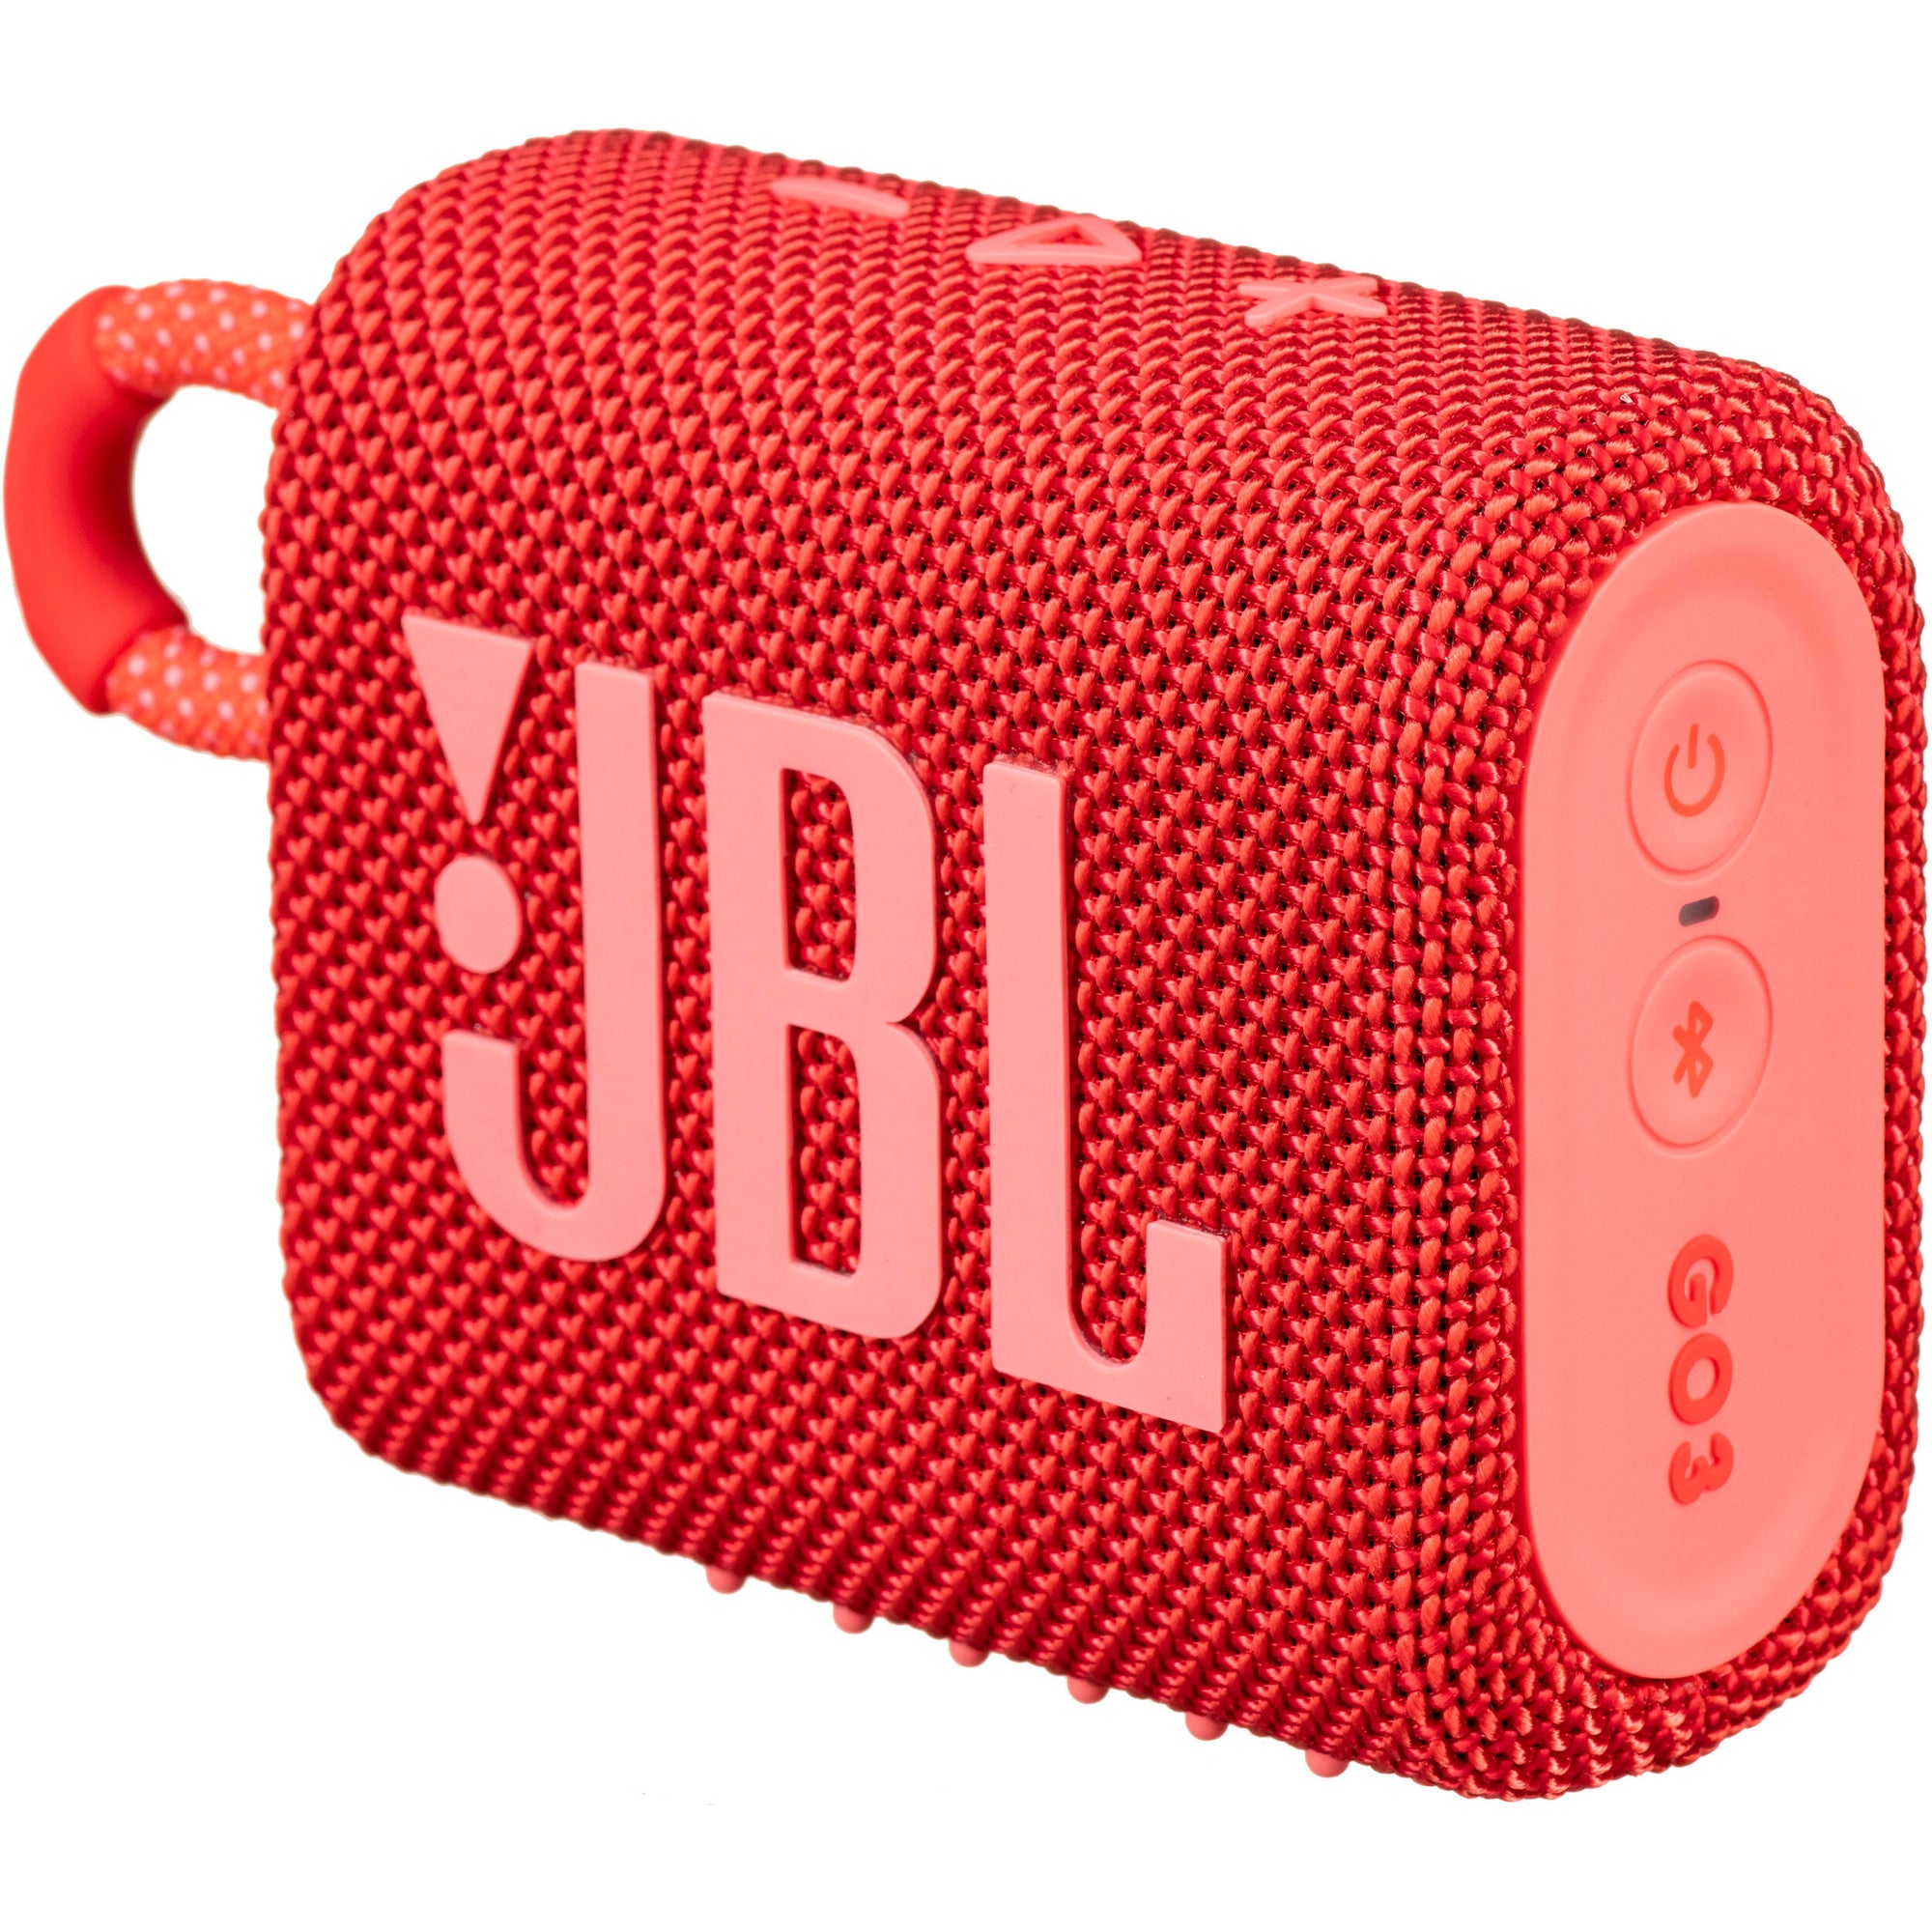 JBL Go 3 Bocina inalámbrica Bluetooth portátil, IP67 resistente al agua ACCESORI